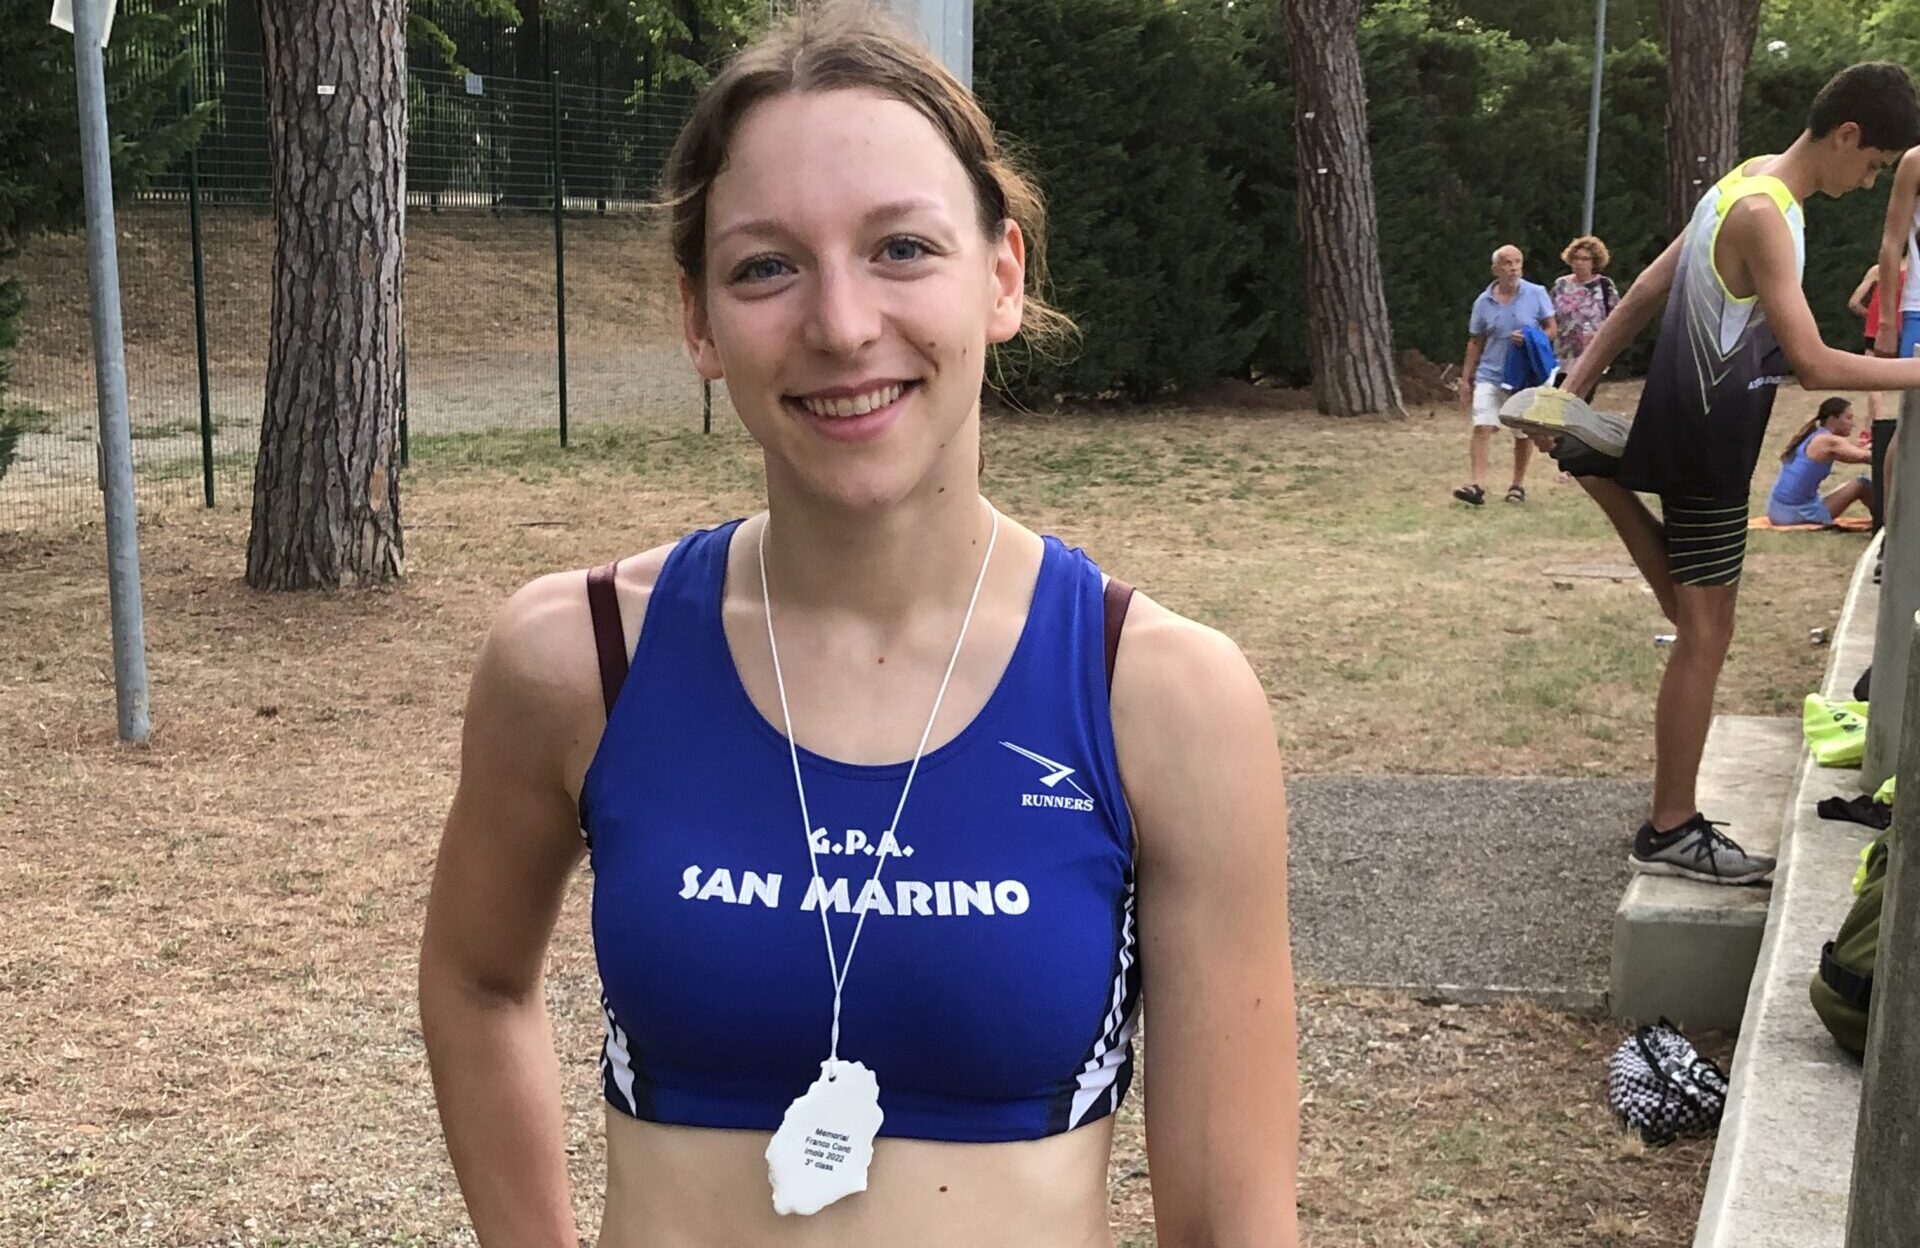 San Marino. Atletica leggera, Sofia Bucci 3ª nei 400m al Memorial “Franco Conti” di Imola